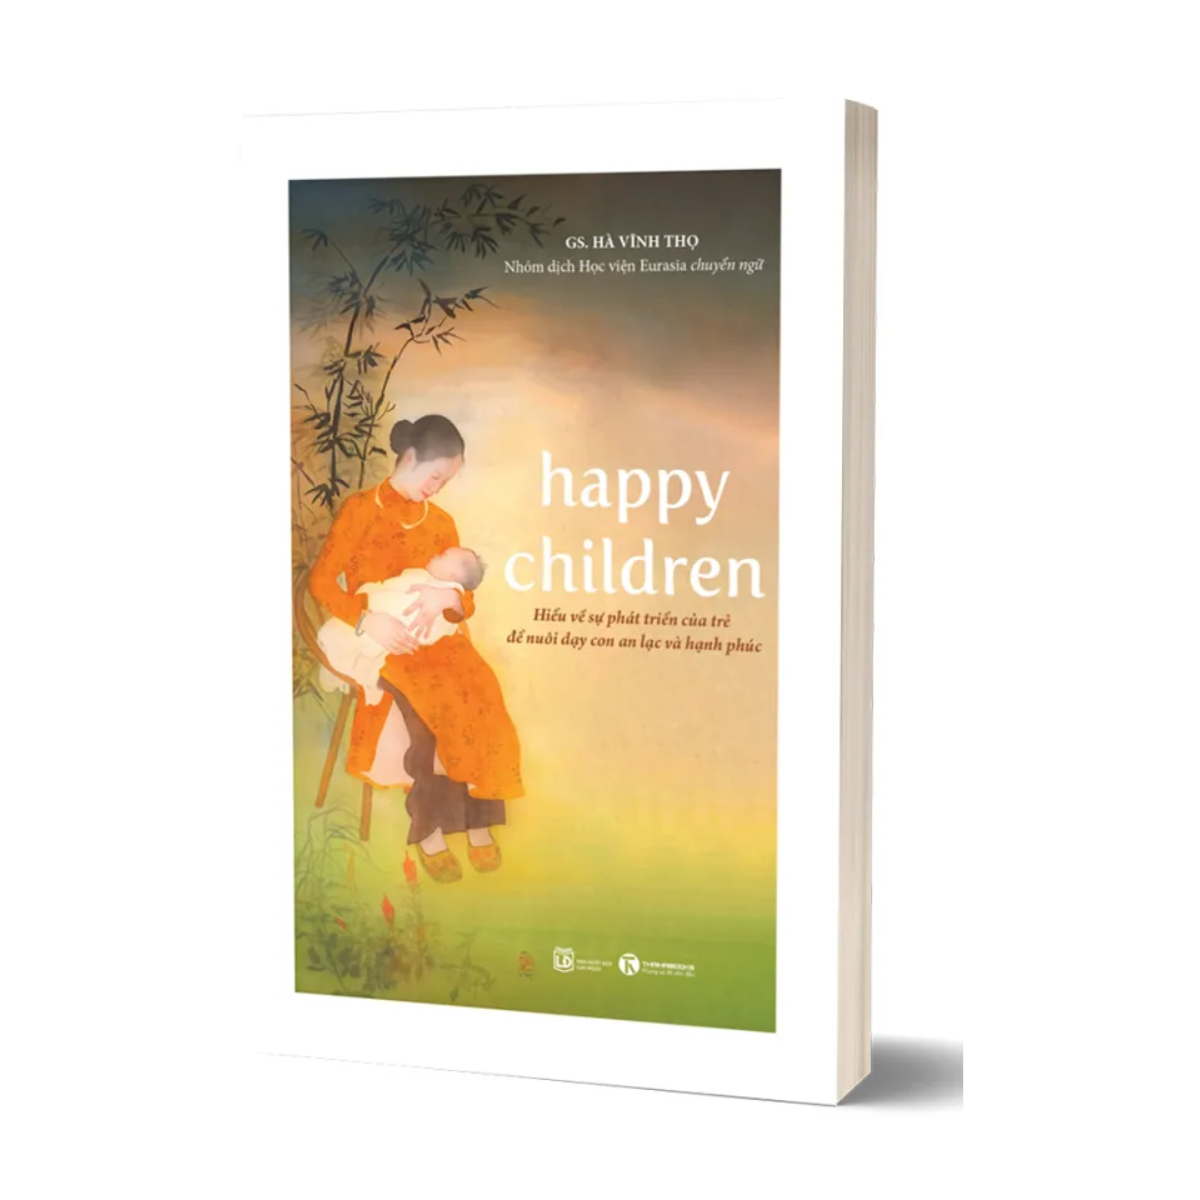 Happy Children - Hiểu về sự phát triển của trẻ để nuôi con an lạc và hạnh phúc